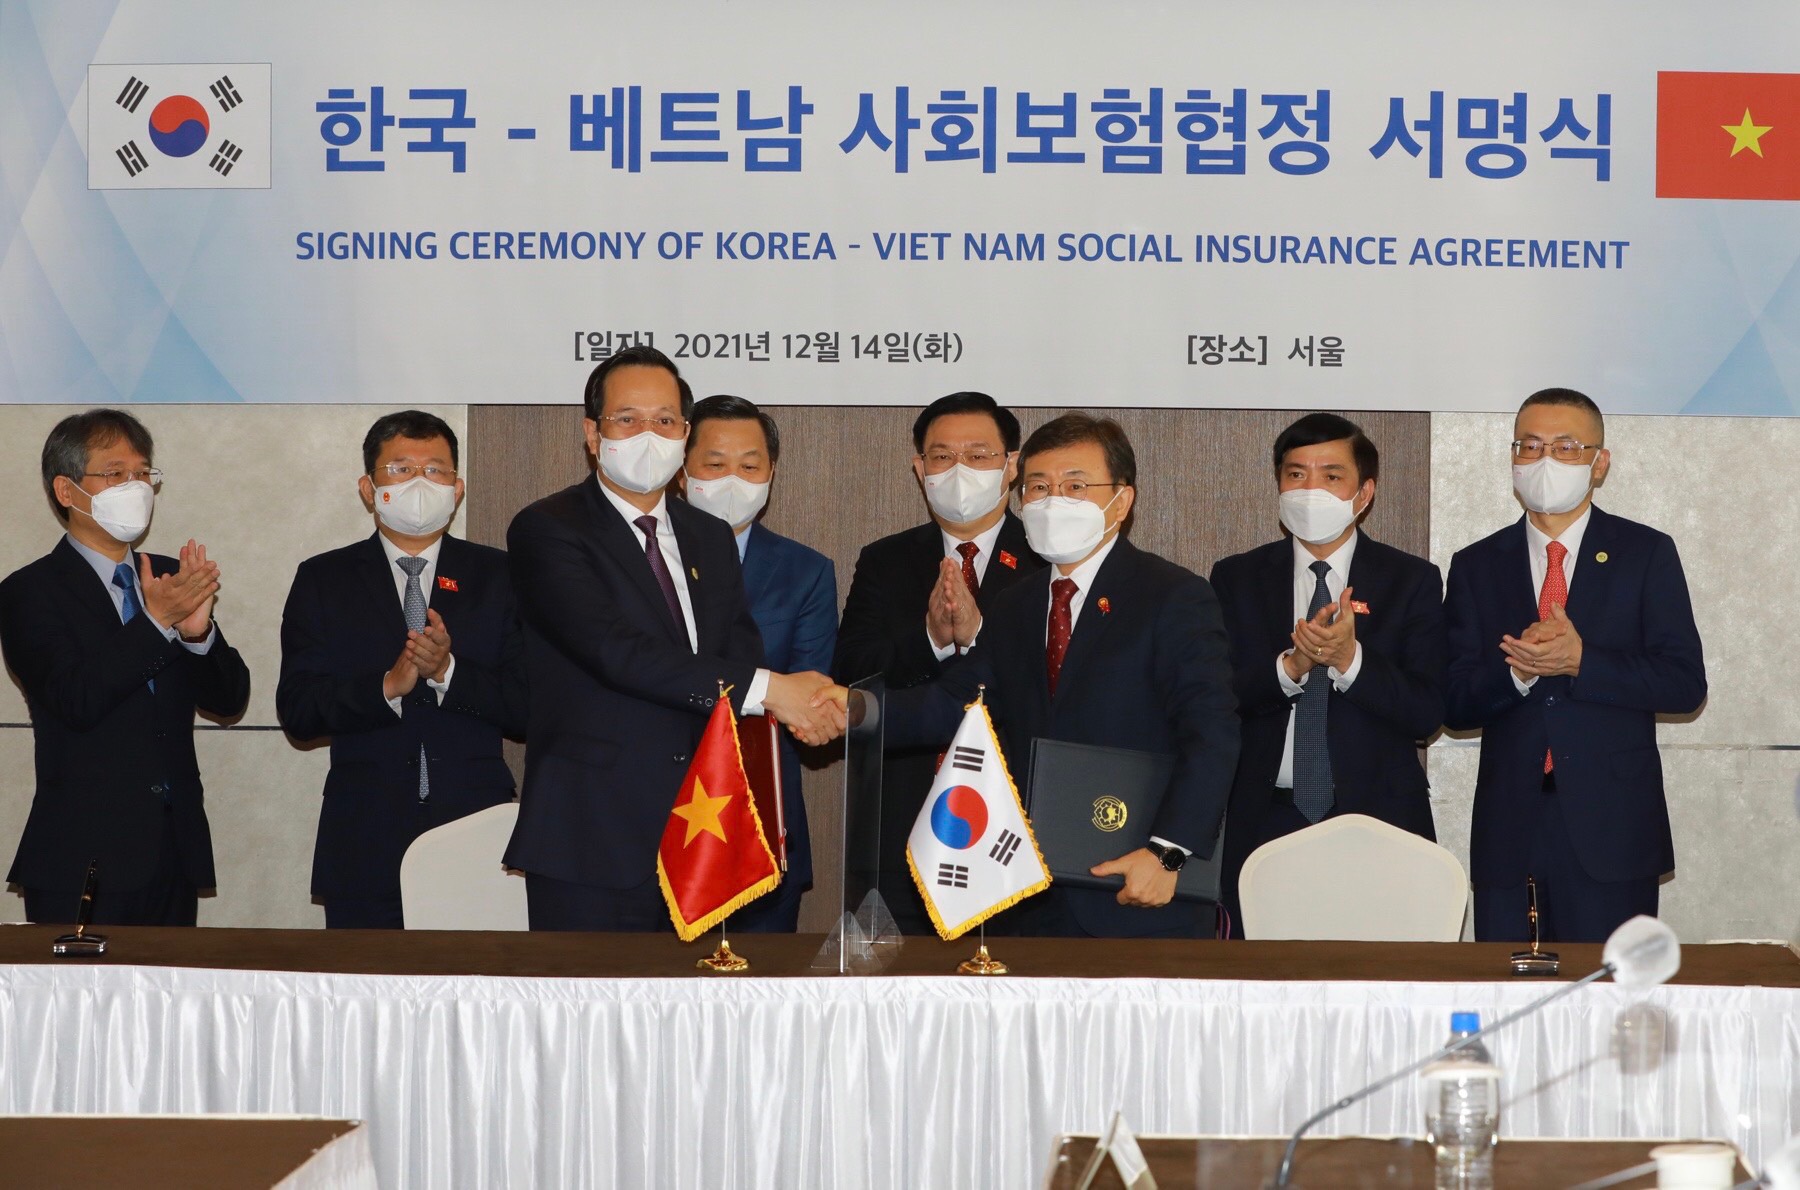 Bộ trưởng Bộ LĐTB&XH Việt Nam Đào Ngọc Dung và Bộ trưởng Bộ Y tế và Phúc lợi Xã hội Hàn Quốc Kwon Deok-cheol ký hiệp định song phương về BHXH giữa Việt Nam và Hàn Quốc - Ảnh: VGP